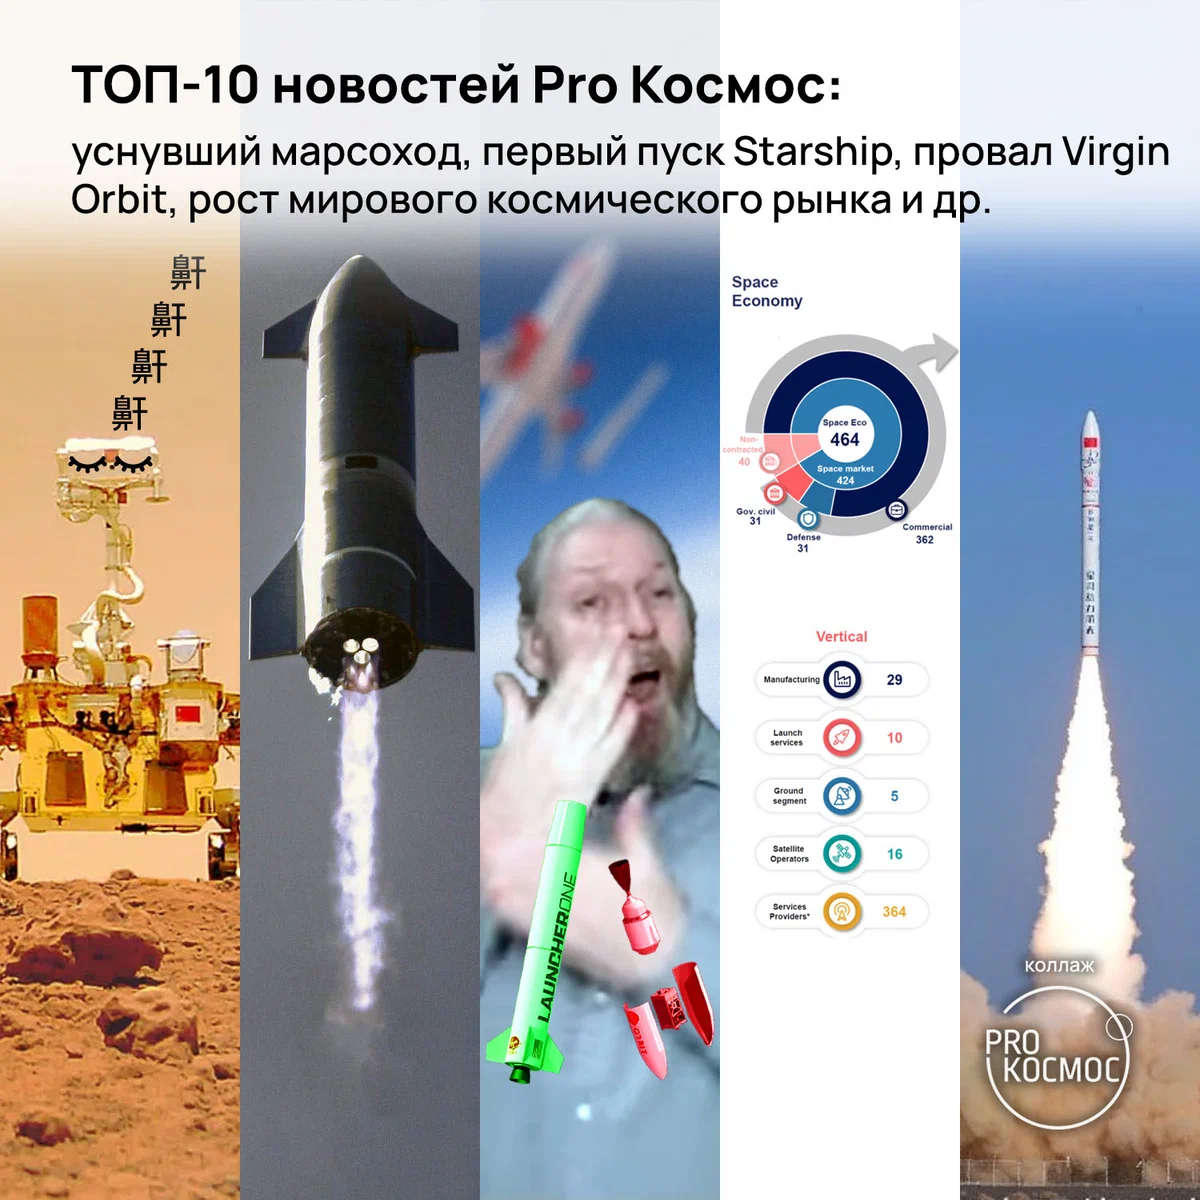 ТОП-10 новостей Pro Космос: уснувший марсоход, первый пуск Starship, провал Virgin Orbit, рост мирового космического рынка и многое другое height=1200px width=1200px